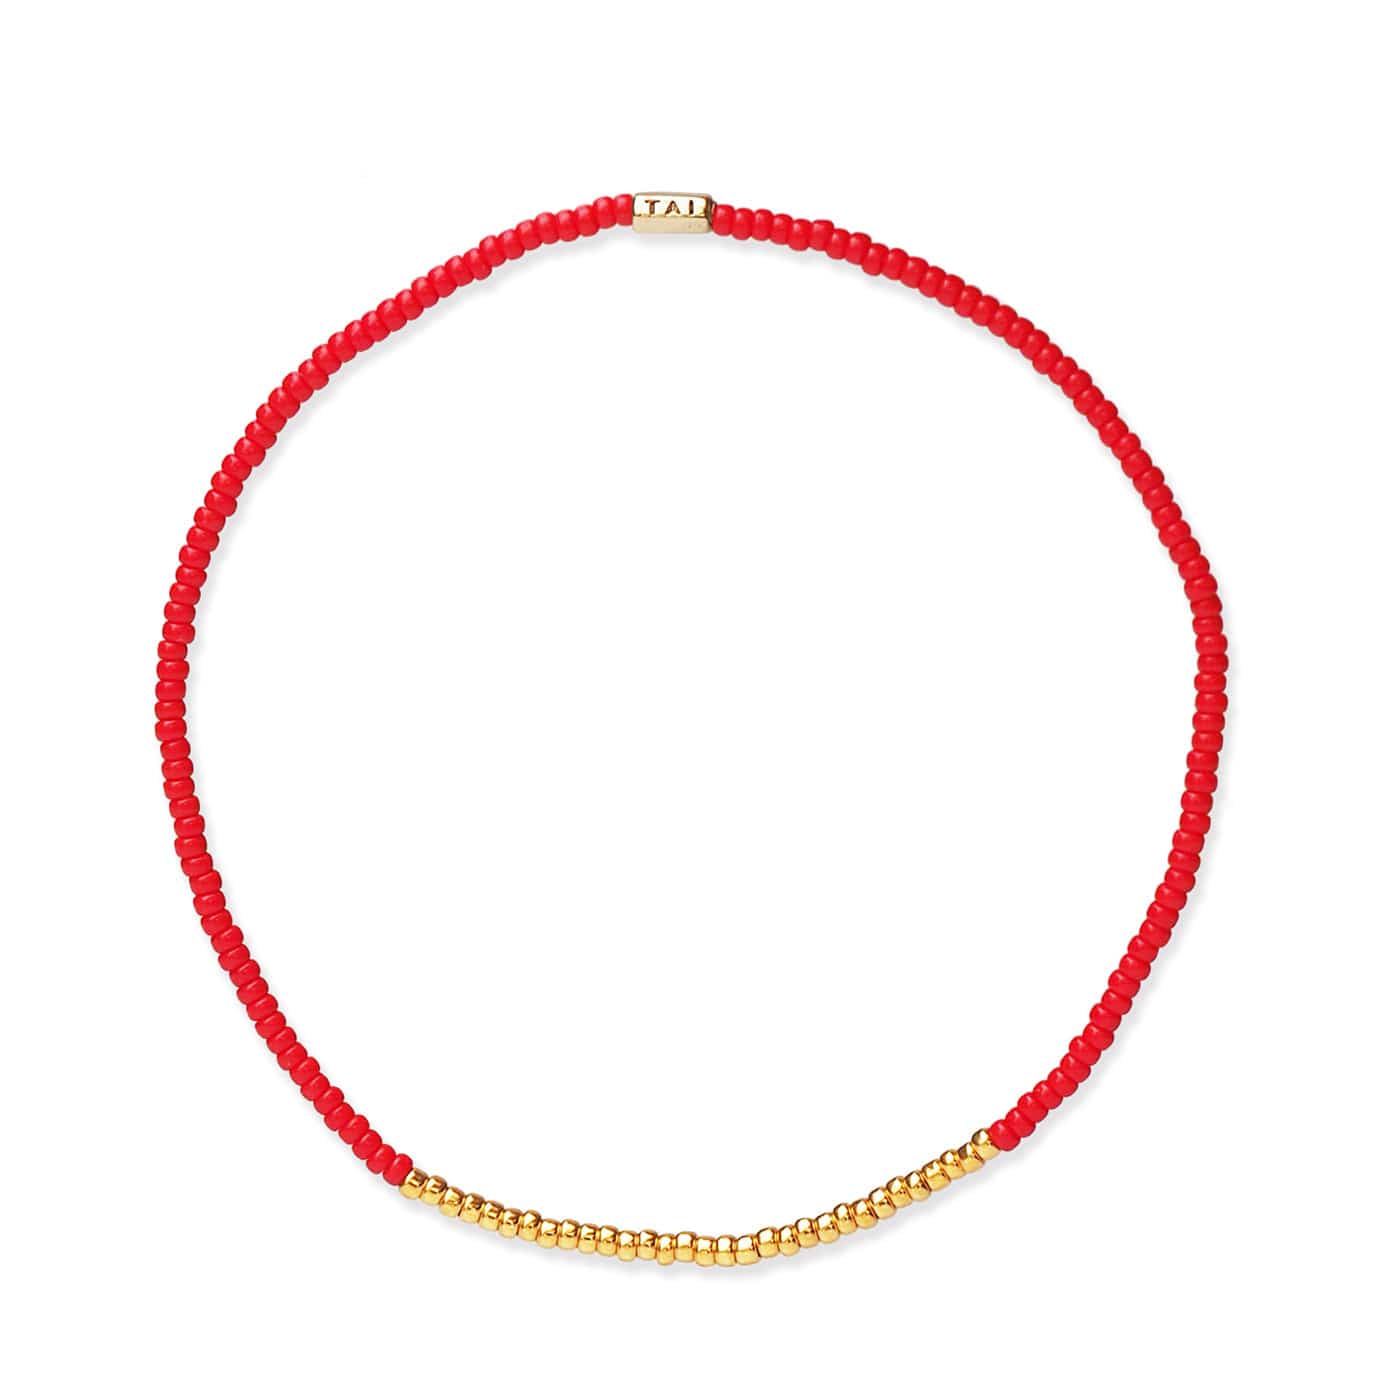 TAI JEWELRY Bracelet RED Praew Bracelet Beaded With Gold Accents